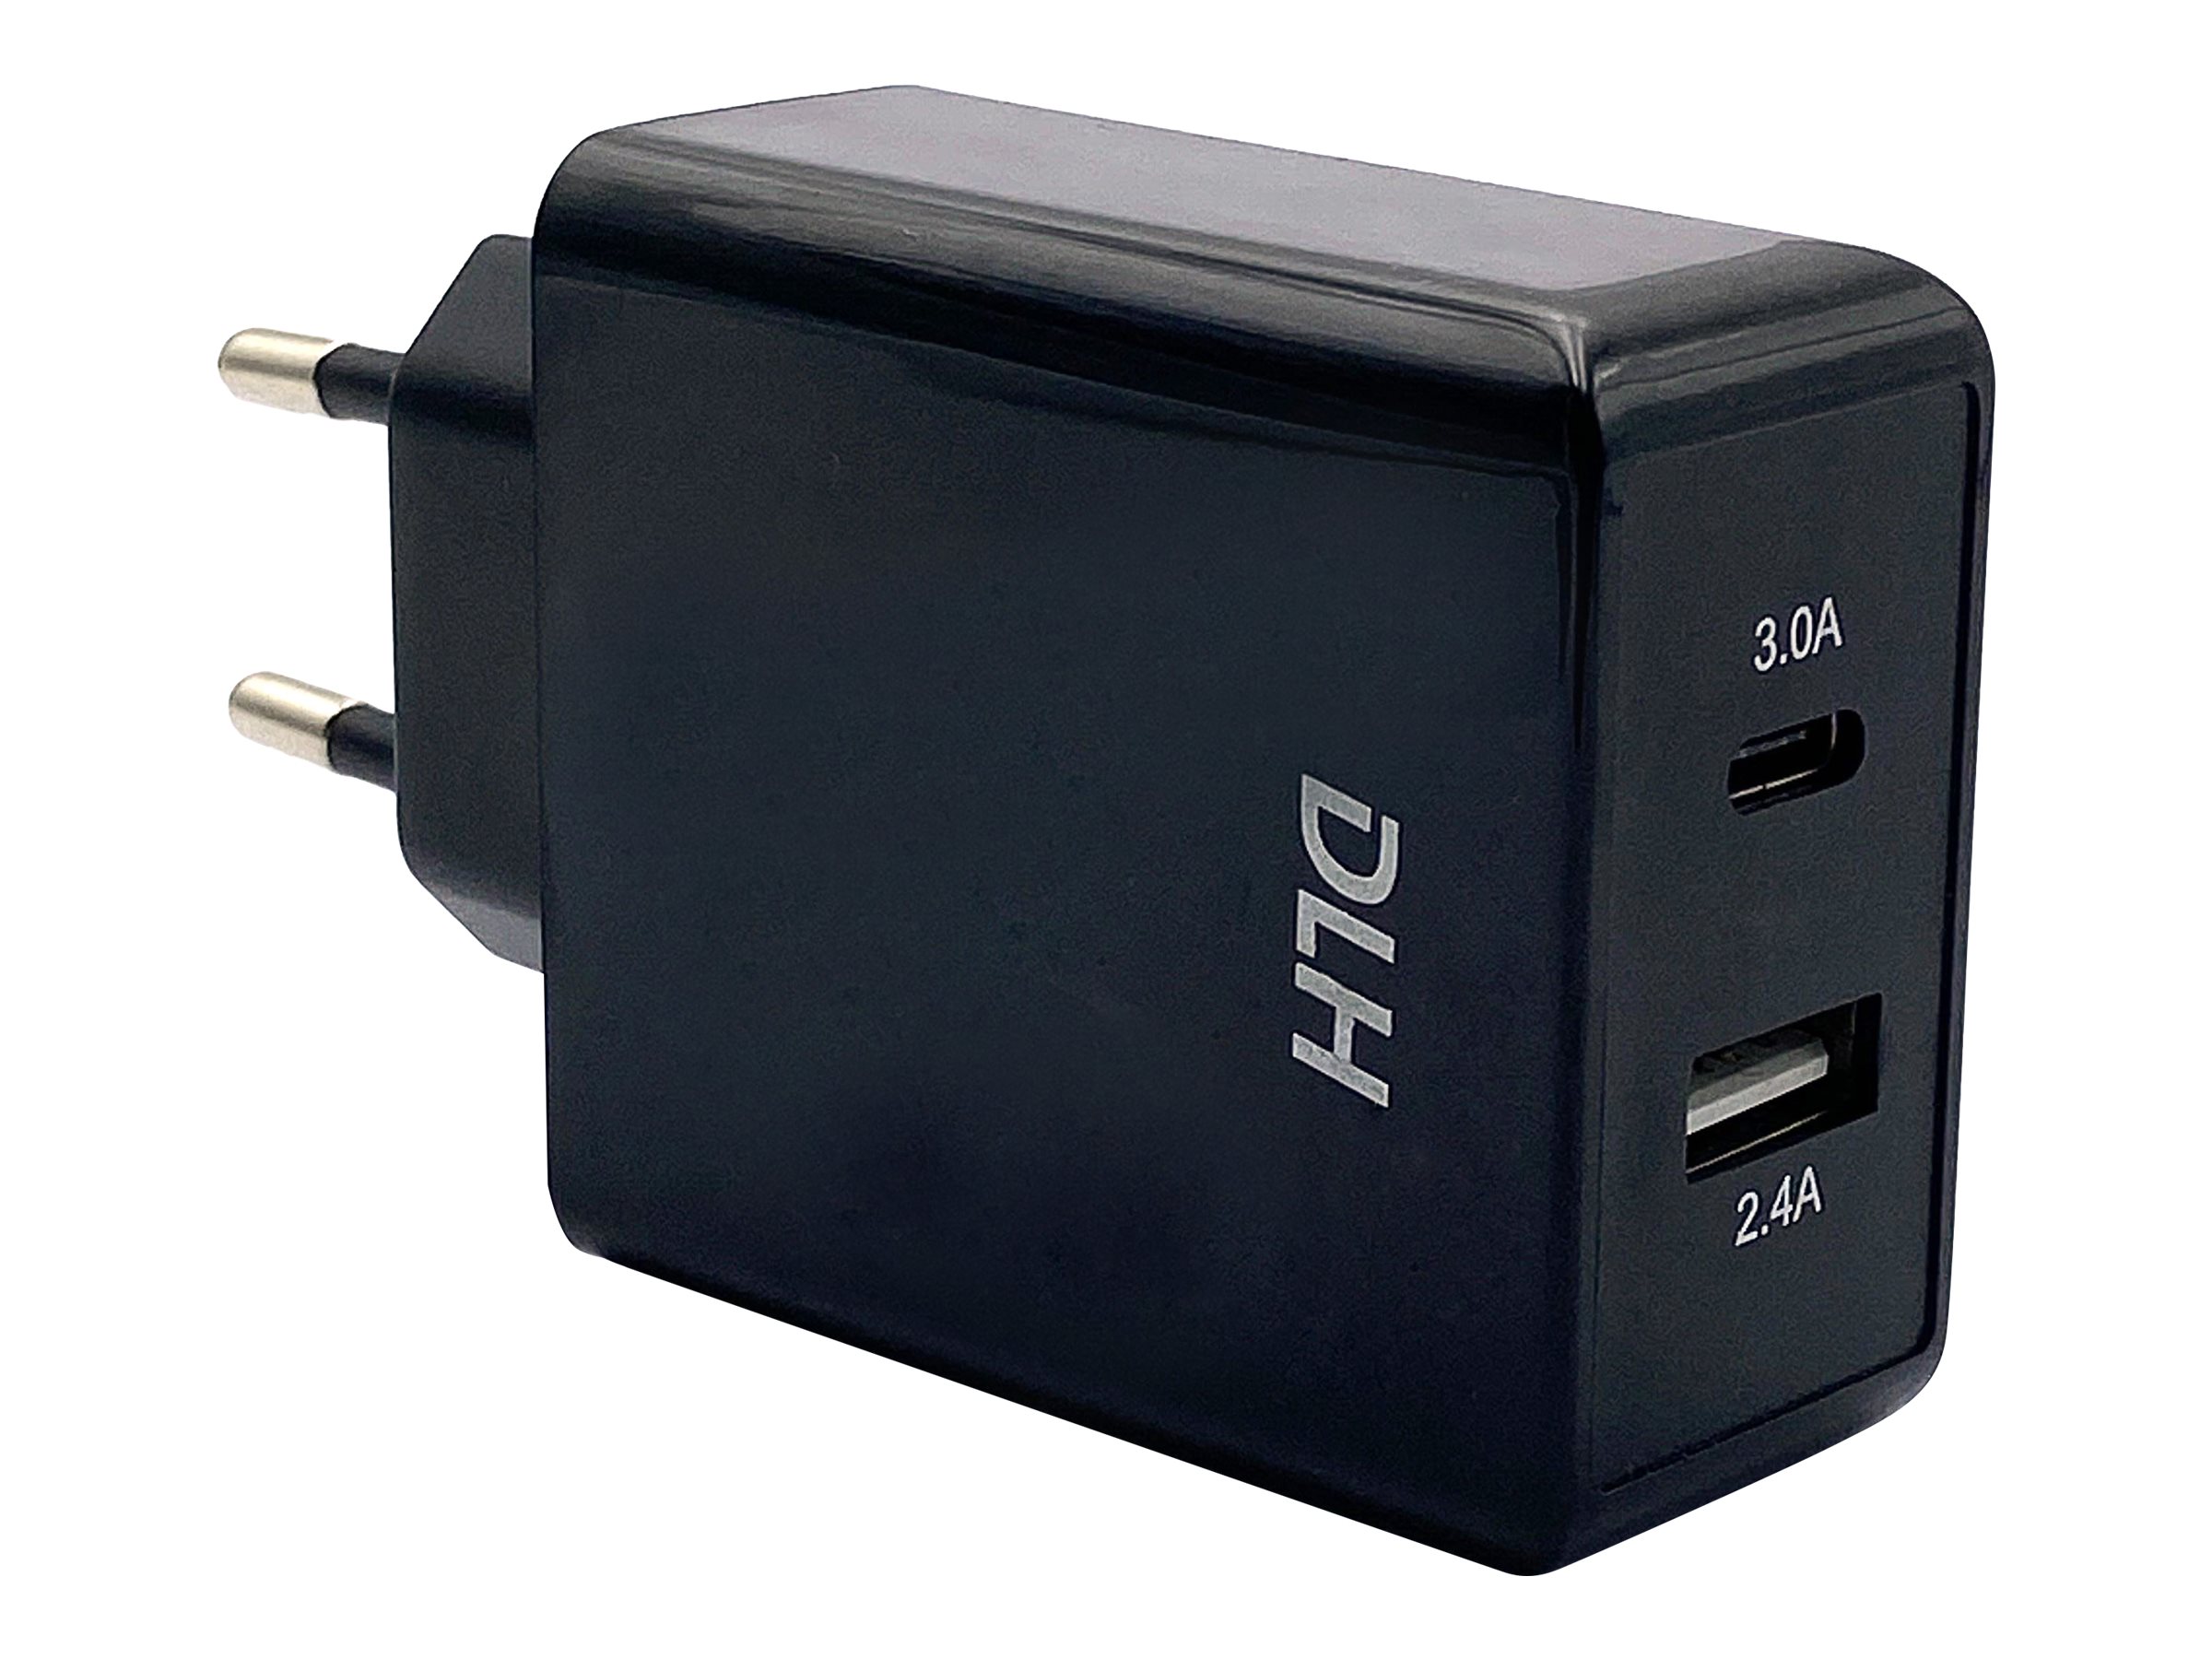 DLH DY-AU2640B - Adaptateur secteur - 24 Watt - 4.8 A - 2 connecteurs de sortie (USB, 24 pin USB-C) - noir - DY-AU2640B - Adaptateurs électriques et chargeurs